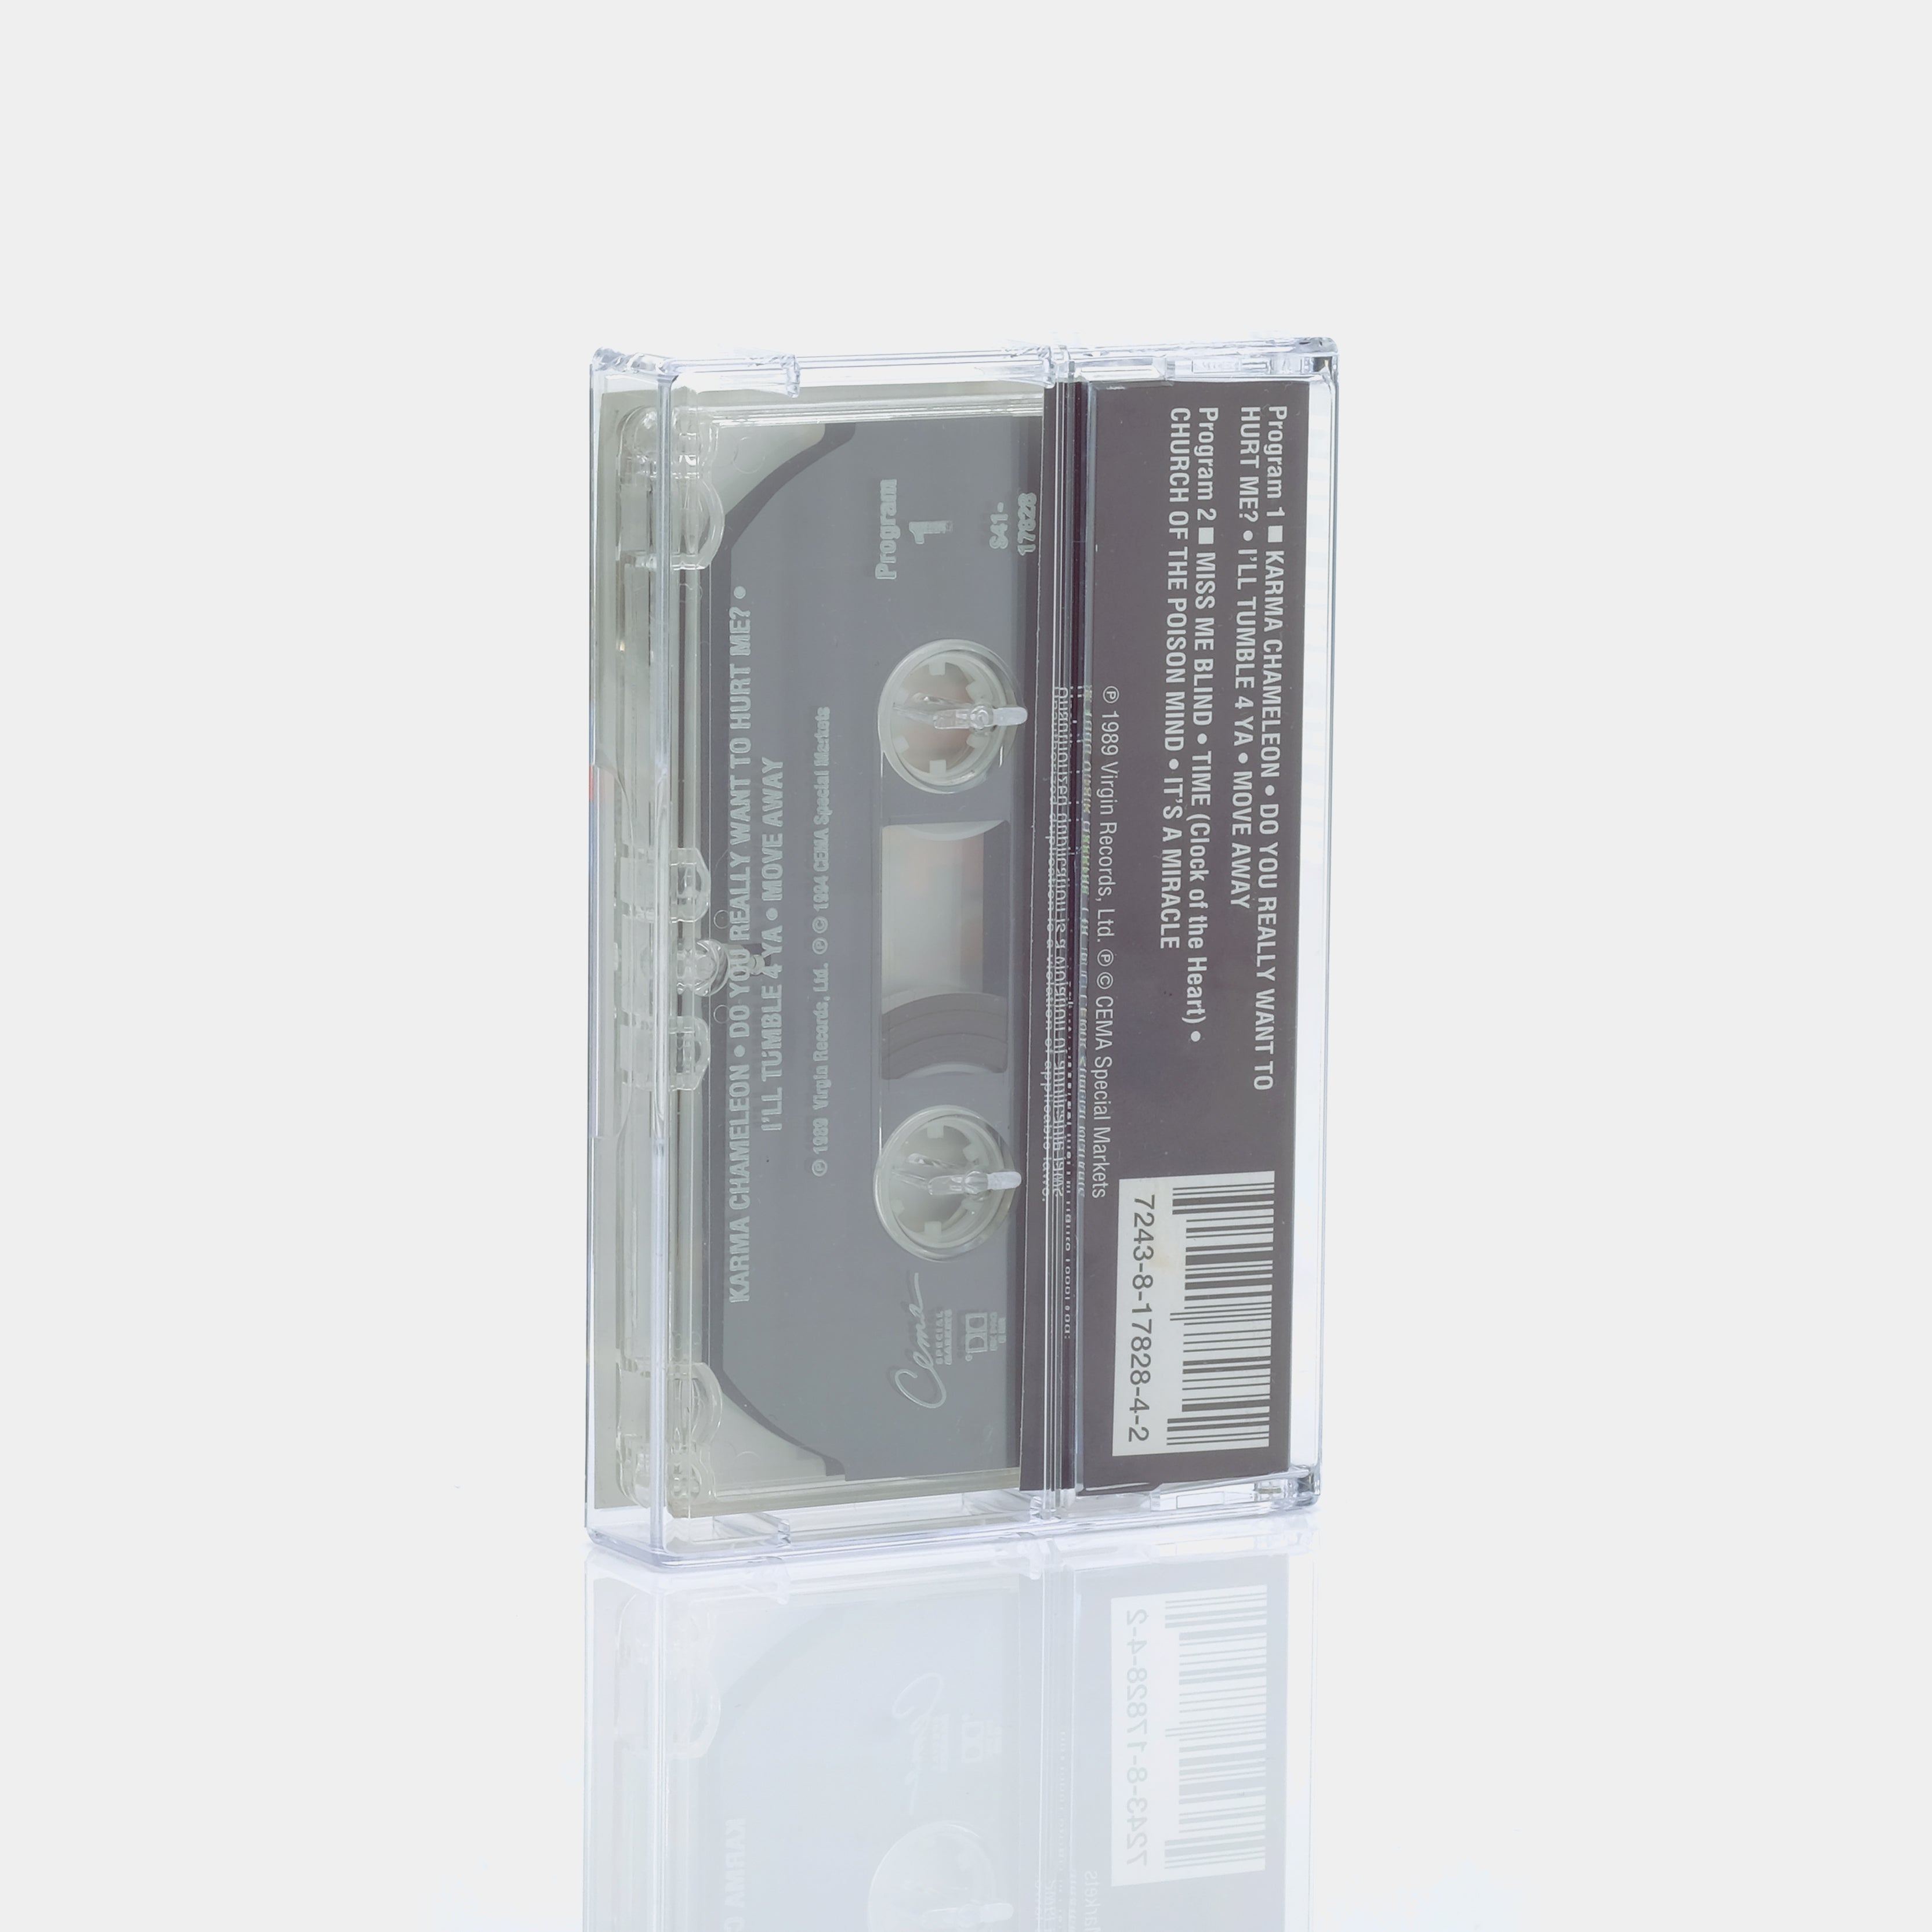 Culture Club - The Best Of Culture Club Cassette Tape